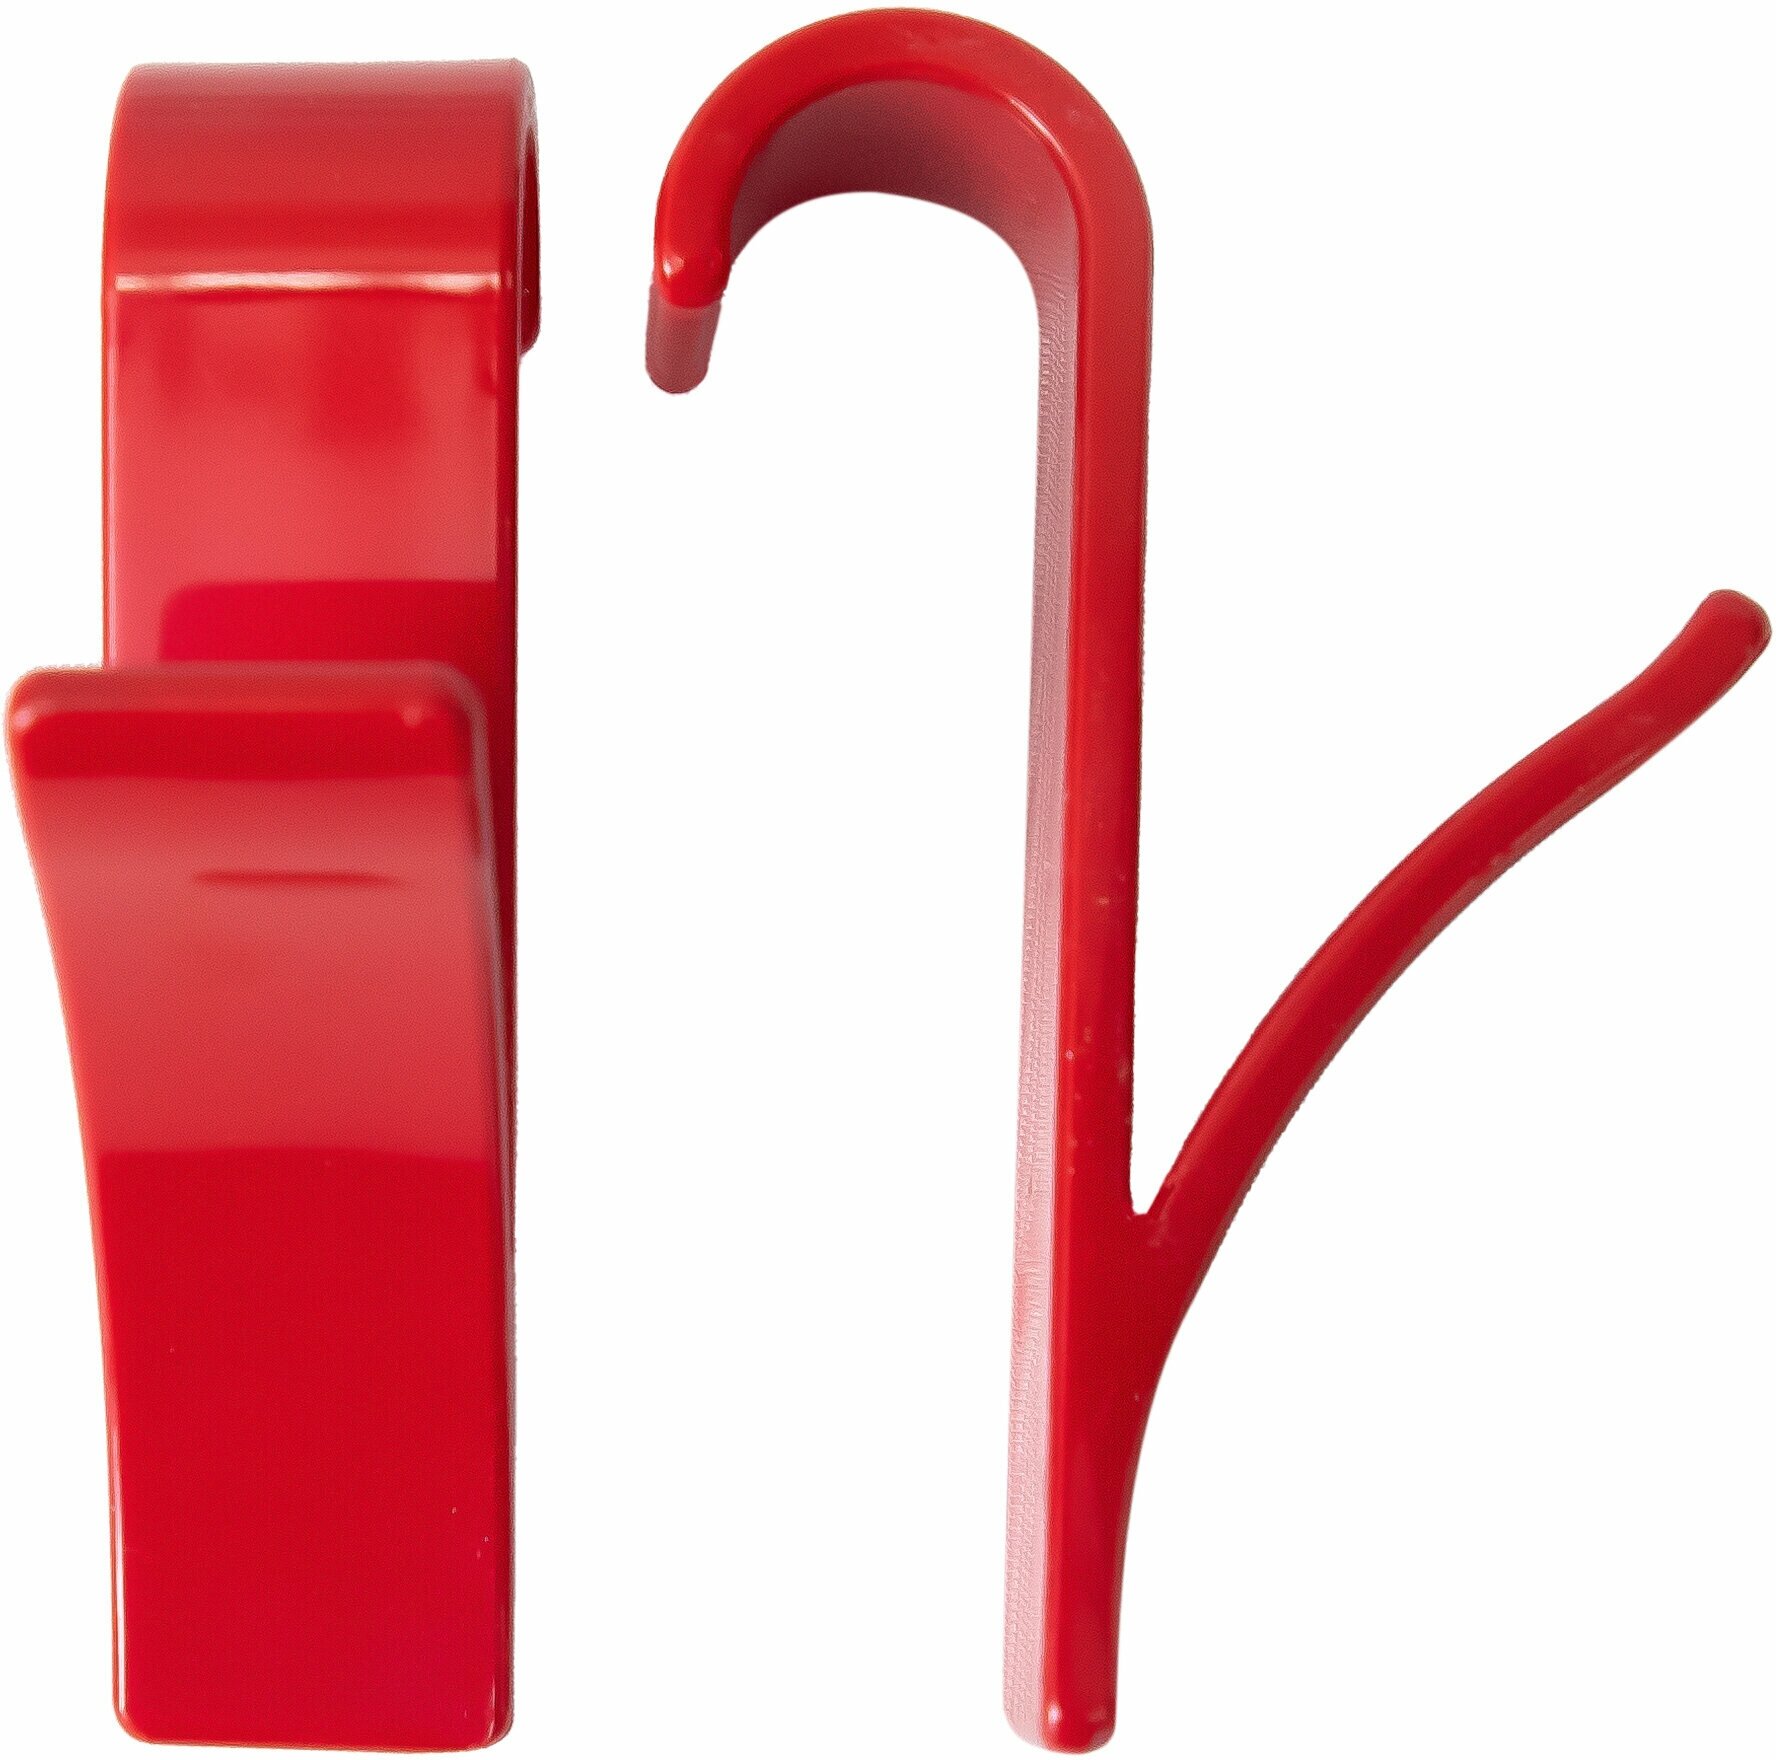 Комплект крючков для полотенцесушителя Primanova M-B24-01 2 шт диаметр-20 мм цвет красный материал ABS пластик размер 9x6x10  вид крепления подвесное